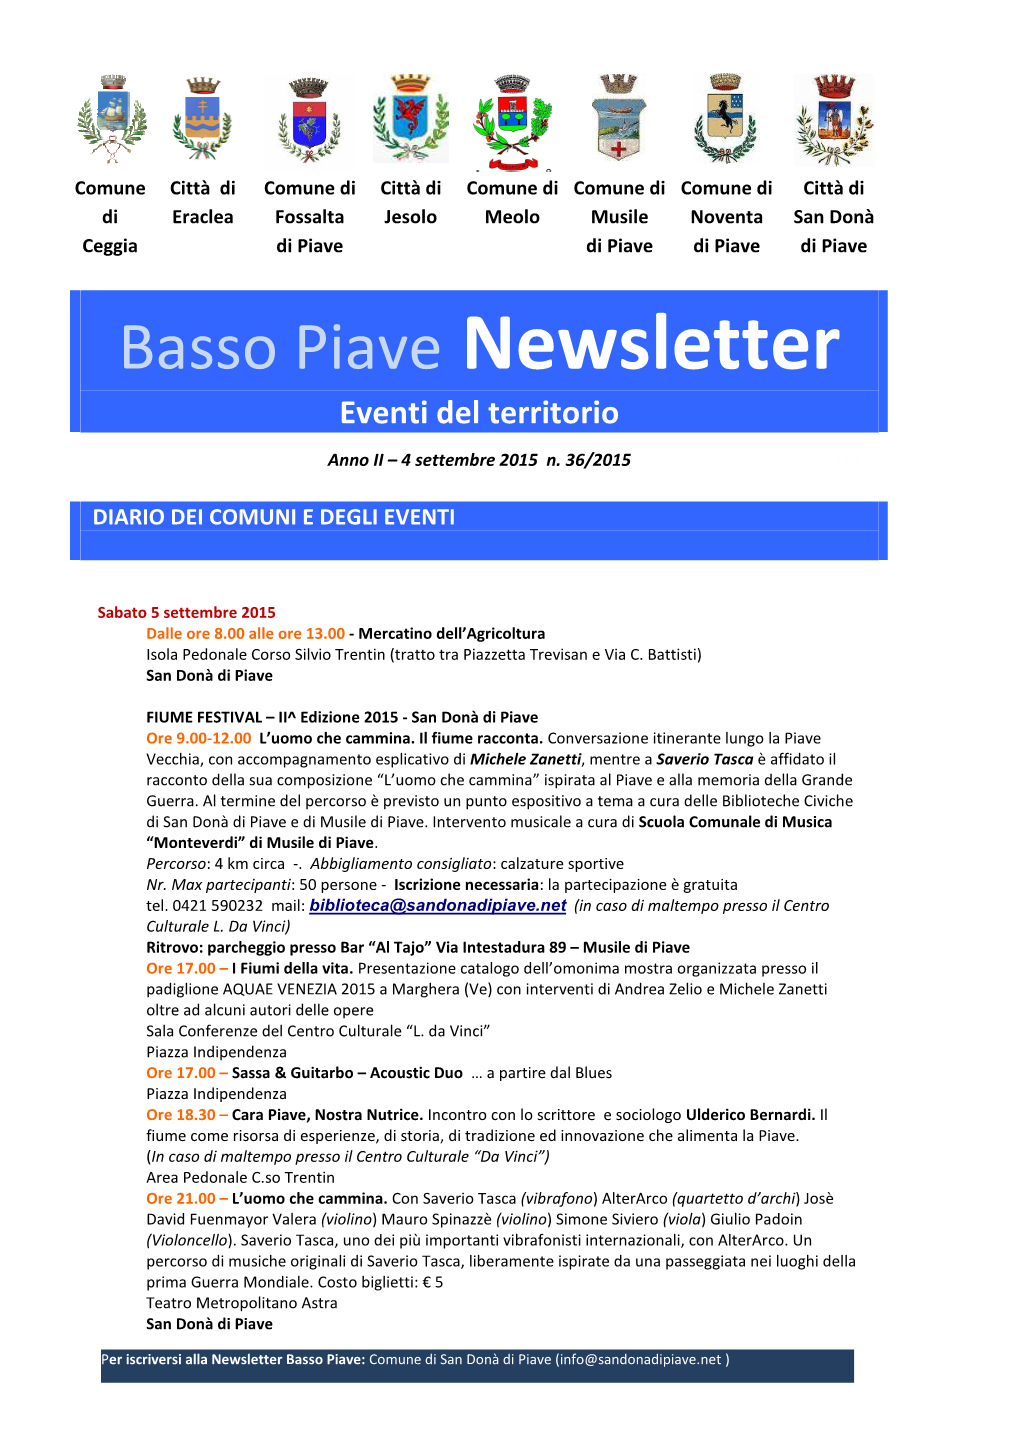 Basso Piave Newsletter Eventi Del Territorio